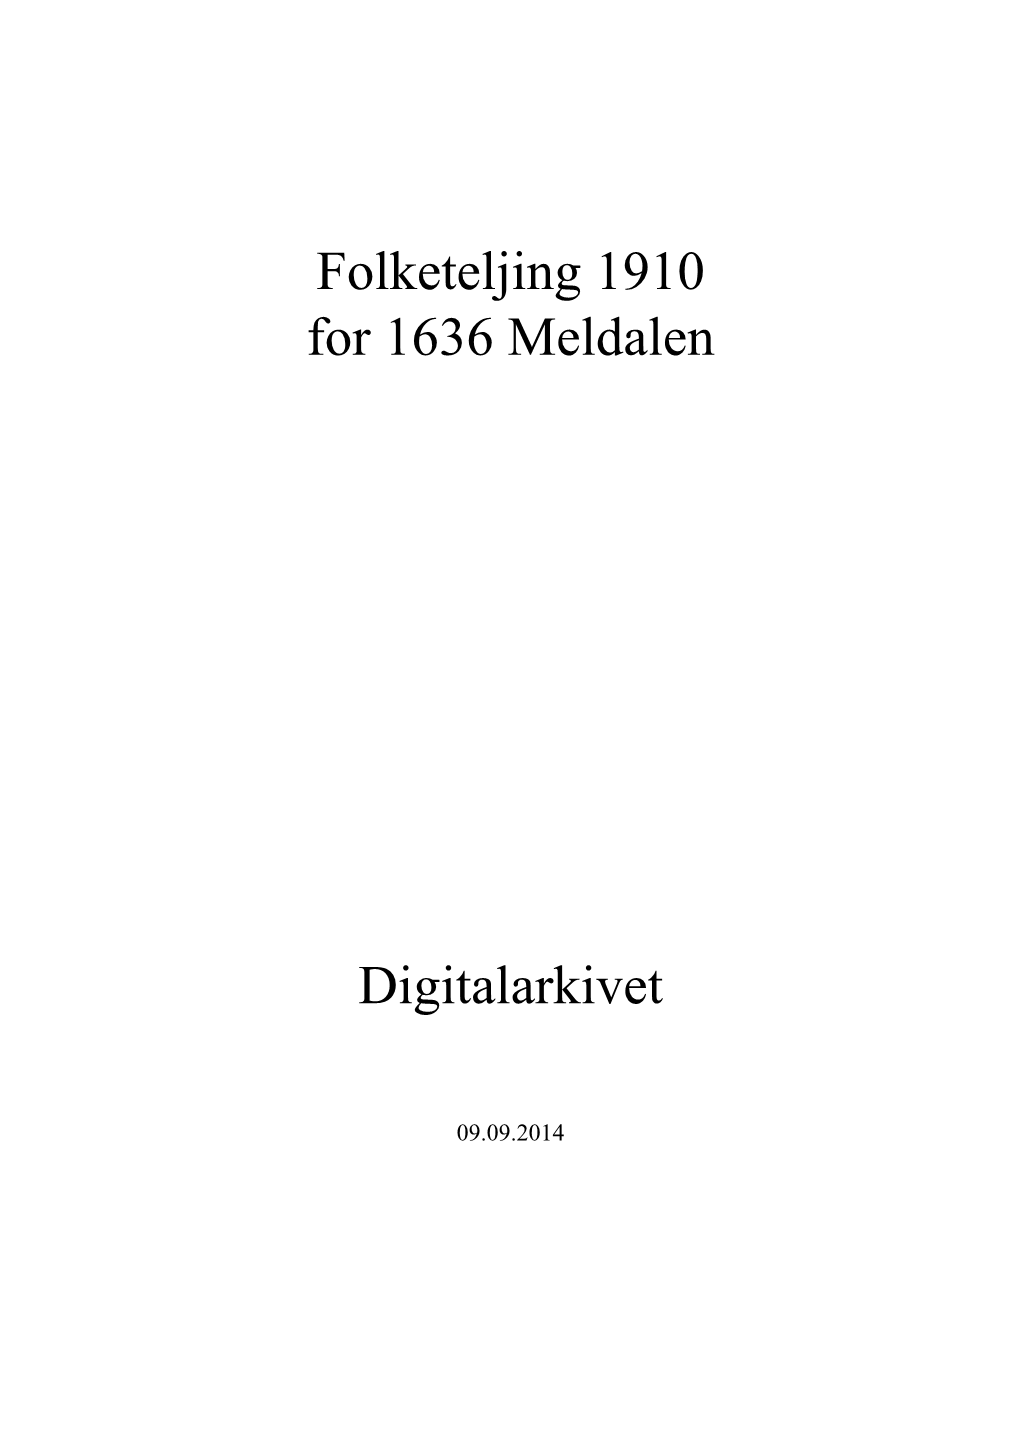 Folketeljing 1910 for 1636 Meldalen Digitalarkivet